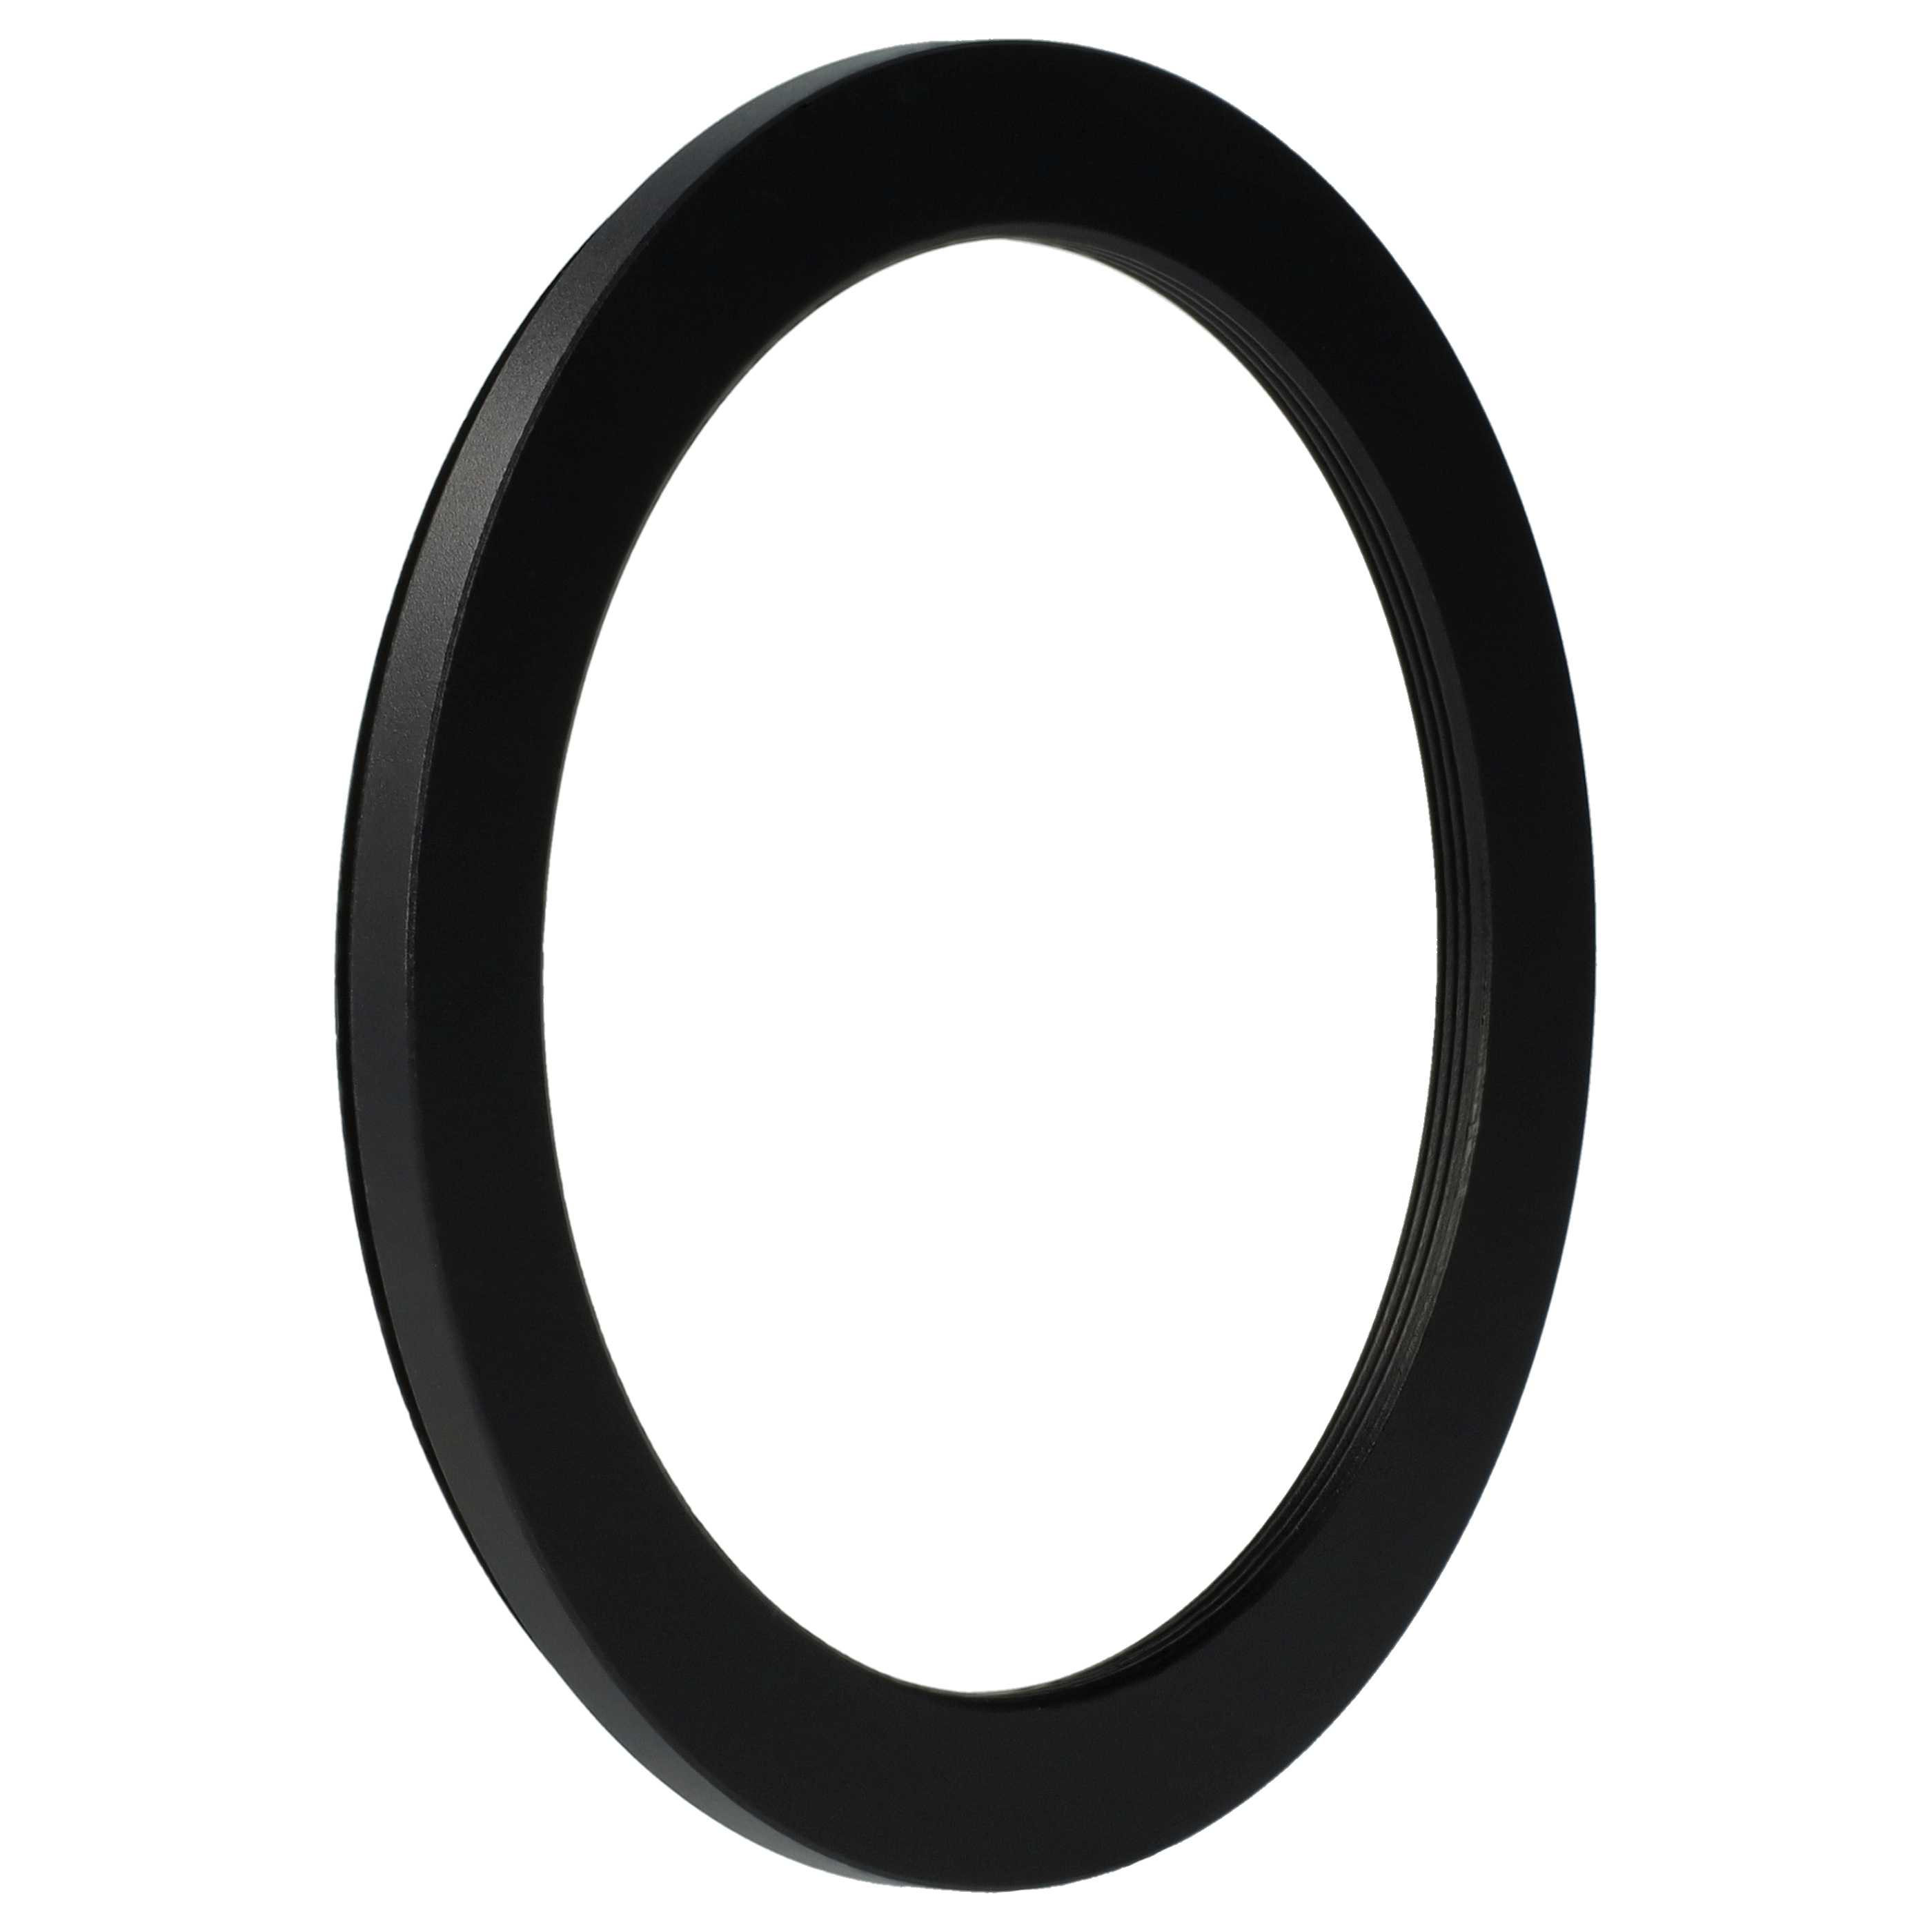 Step-Down-Ring Adapter von 82 mm auf 67 mm passend für Kamera Objektiv - Filteradapter, Metall, schwarz